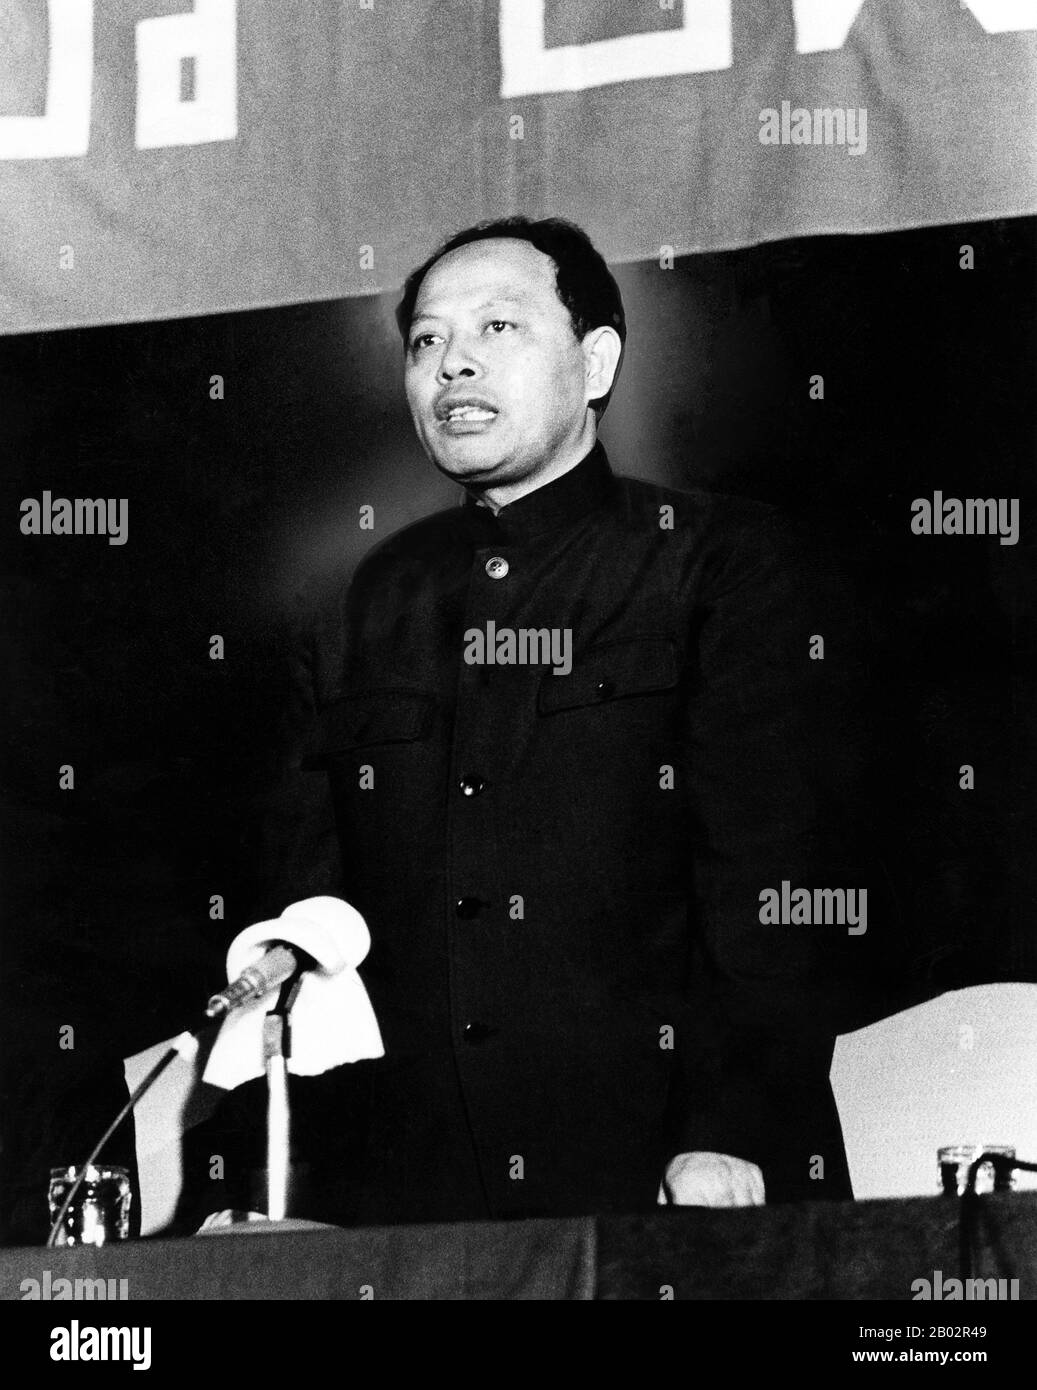 Ieng Sary, Khmers Rouges 'Frère No 3', Est Né Kim Trang Dans La Province De Tra Vinh, Au Vietnam, En 1924. Il a été vice-premier ministre et ministre des Affaires étrangères du Kampuchea démocratique de 1975 à 1979 et a occupé plusieurs postes de haut niveau aux Khmers rouges jusqu'à sa défection en 1996. Il était marié à Ieng Thirith, ancien ministre des Affaires sociales Khmers rouges. Ieng Sary est mort en détention pendant son procès pour génocide, le 14 mars 2013, âgé de 87 ans. Banque D'Images